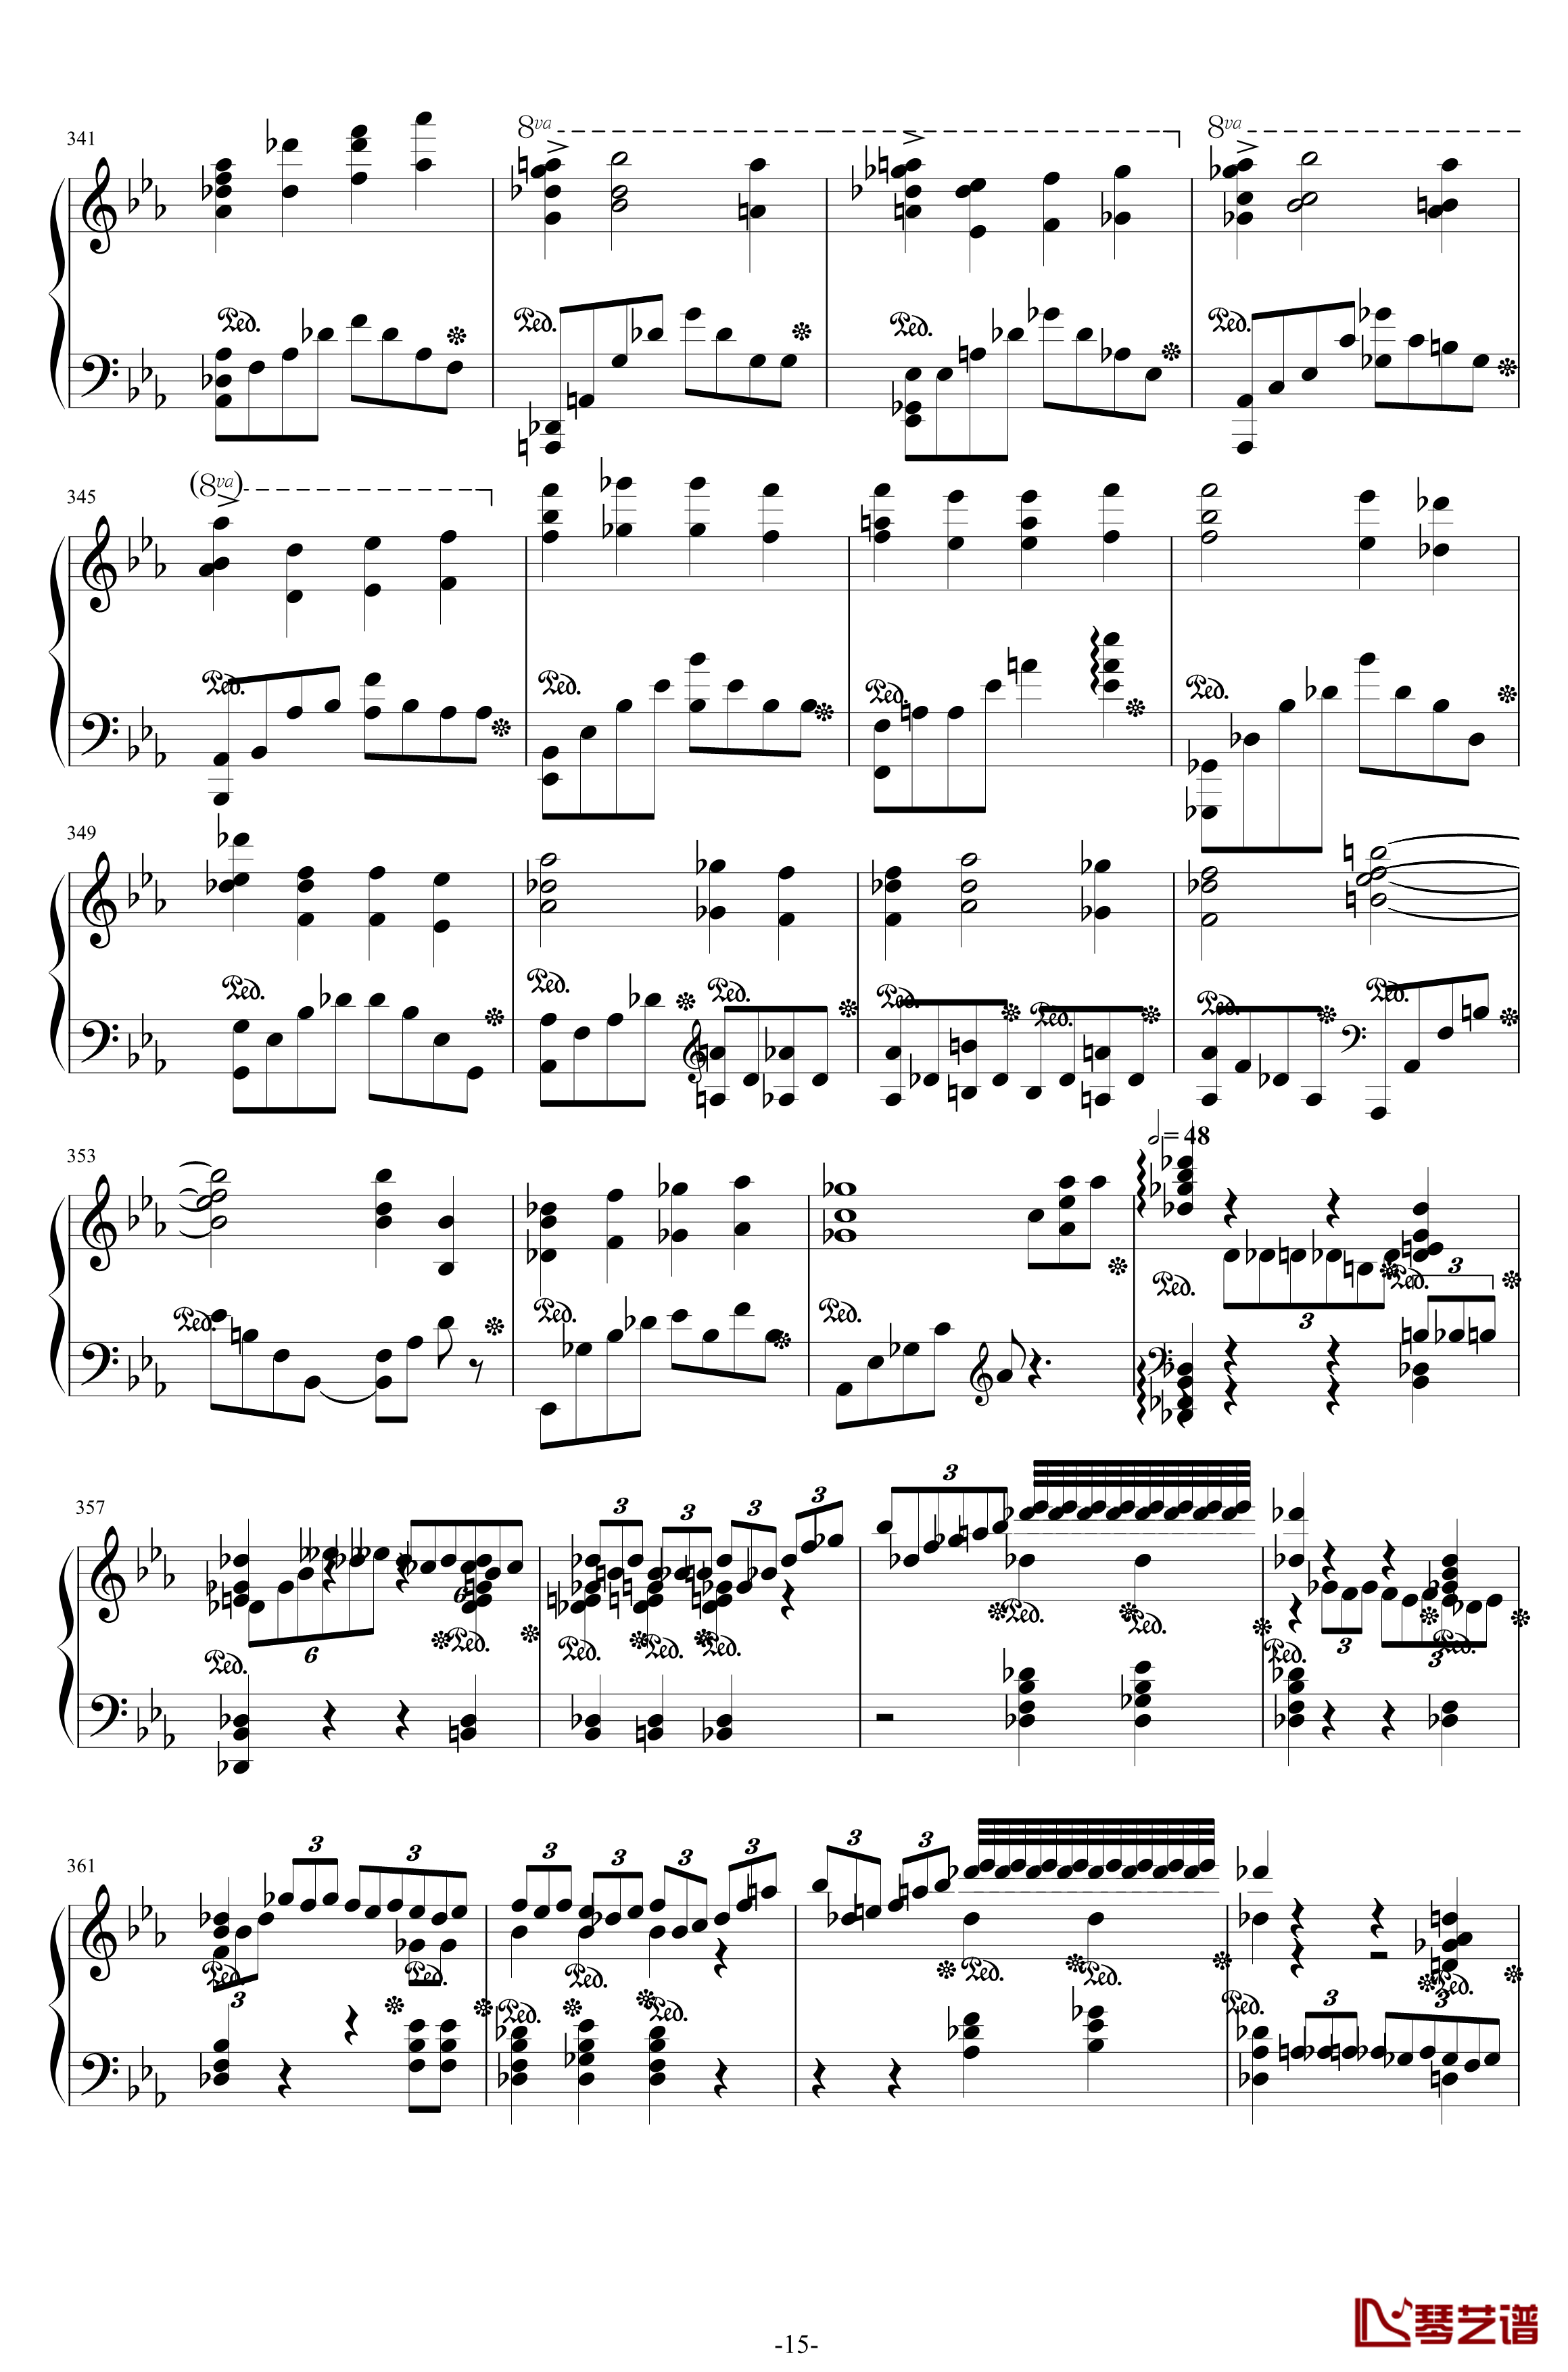 第二钢琴协奏曲钢琴谱-第三乐章独奏版-c小调-拉赫马尼若夫15